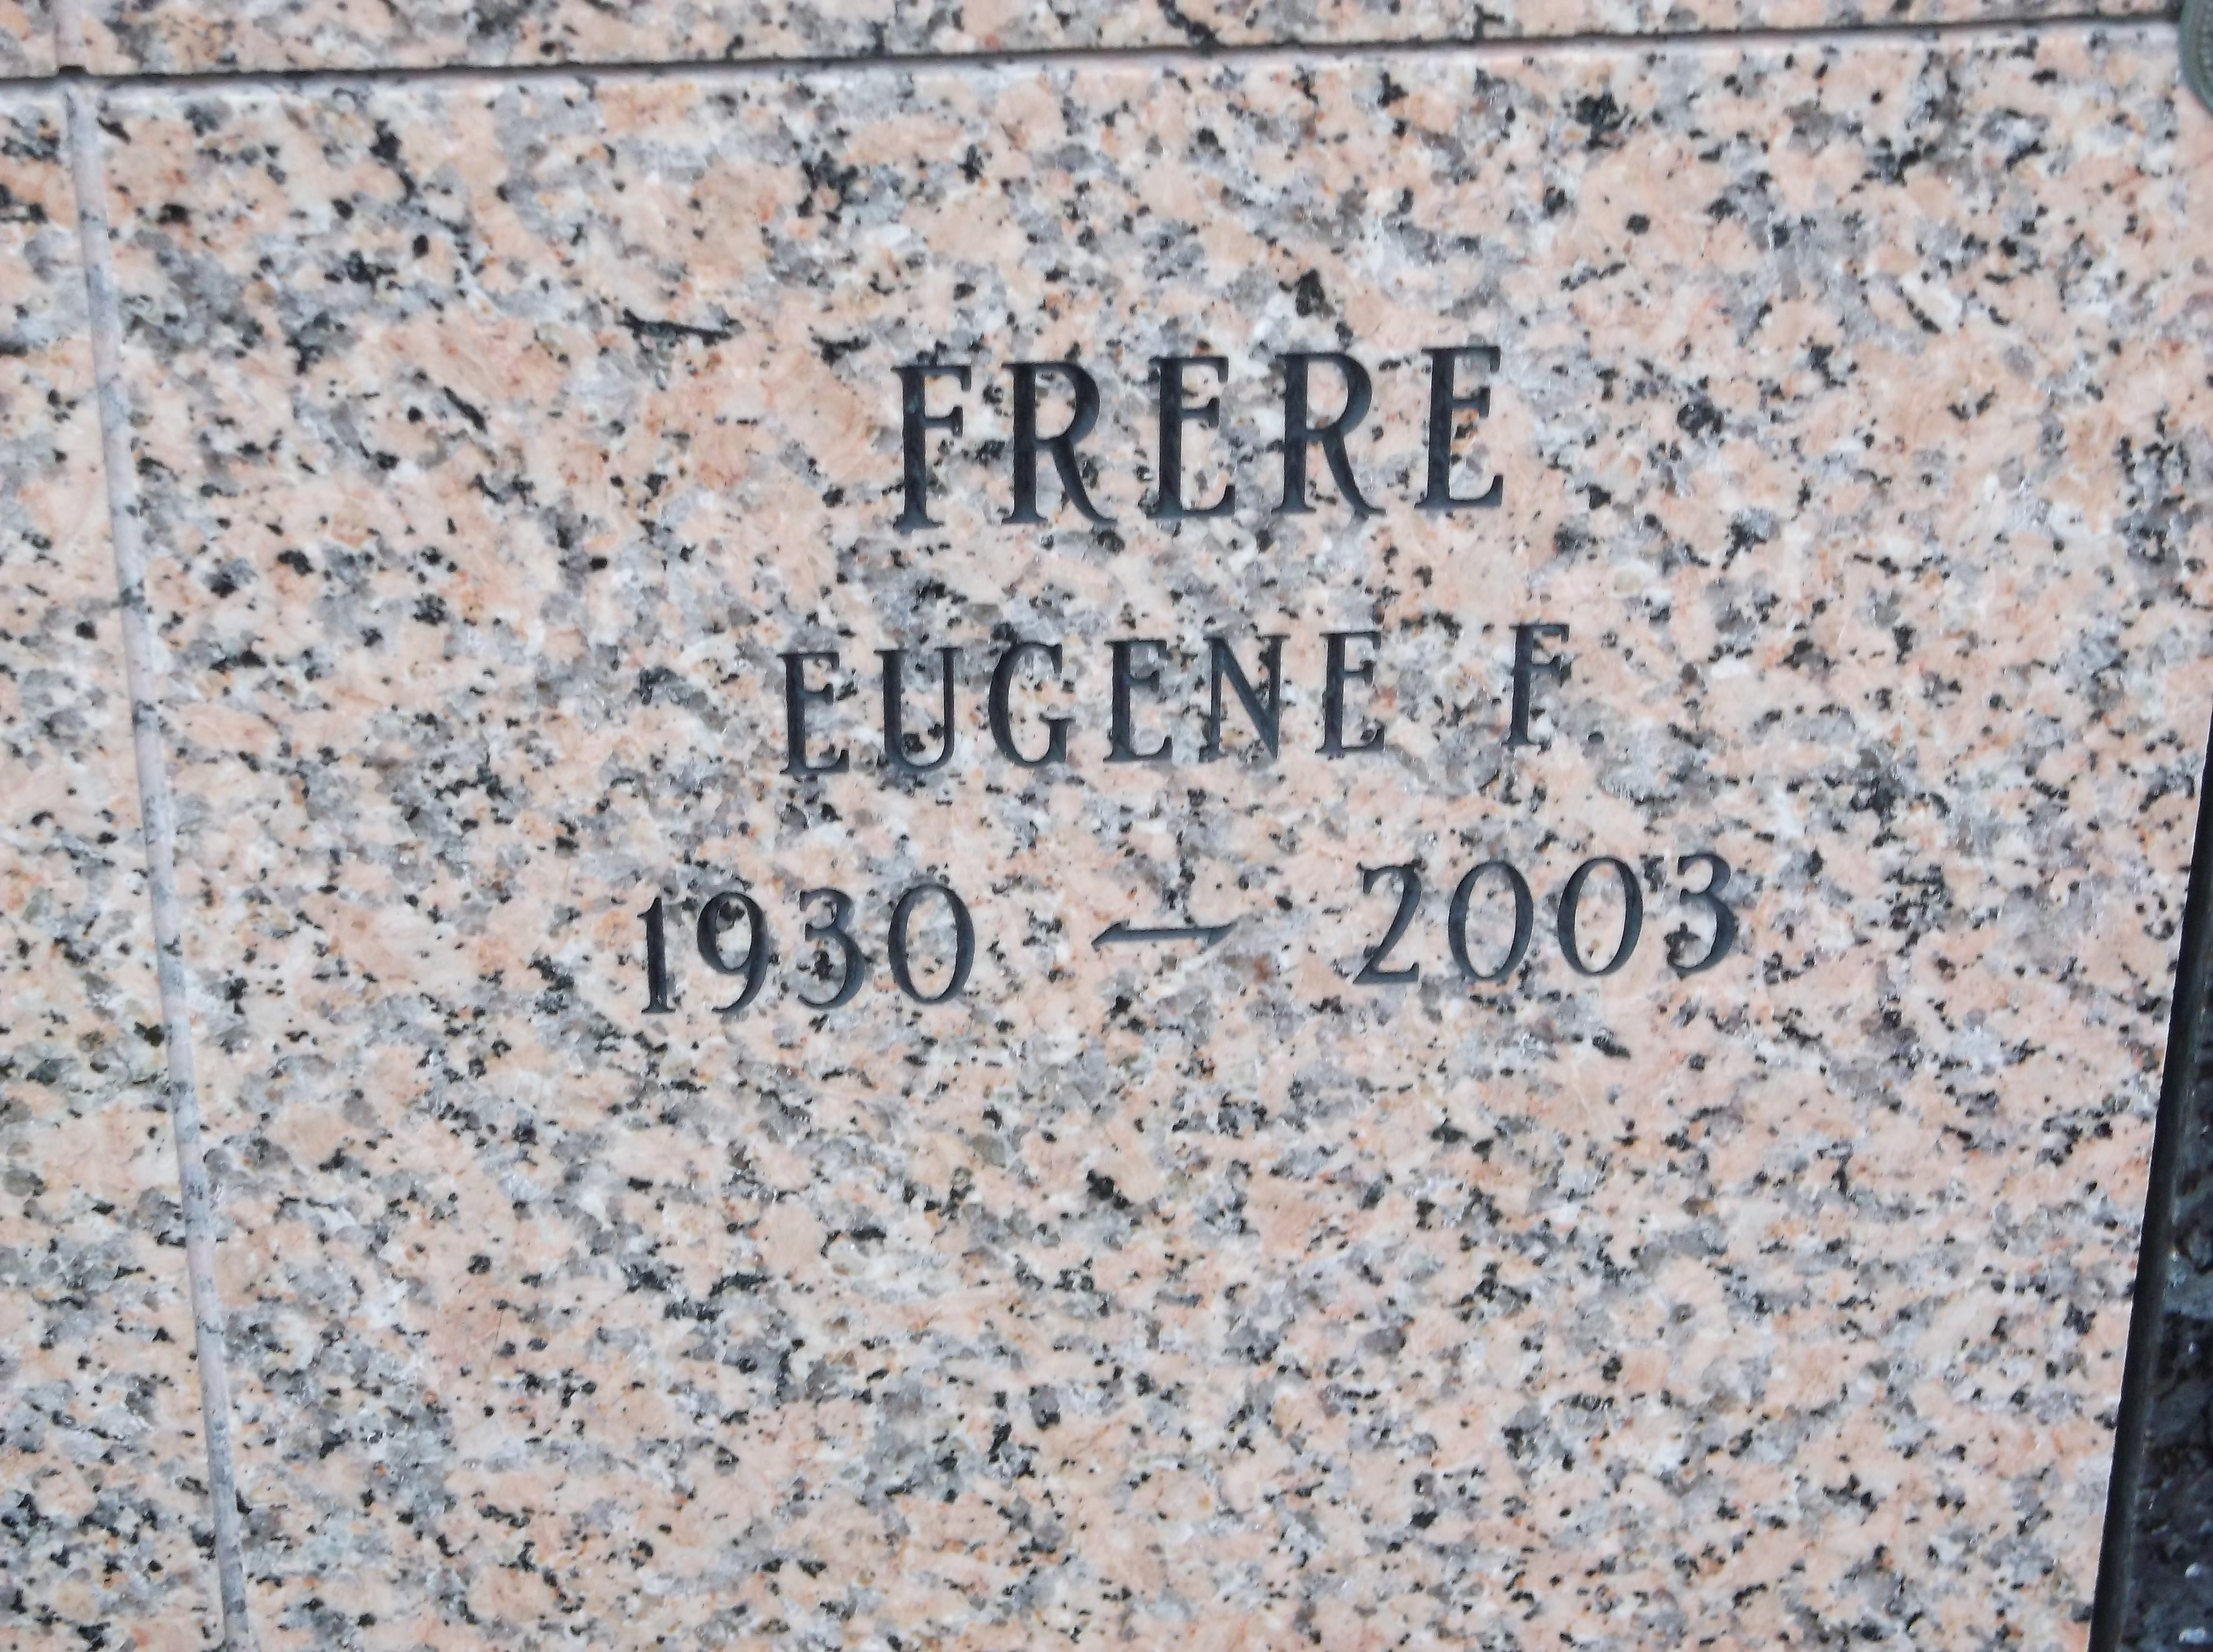 Eugene F Frere